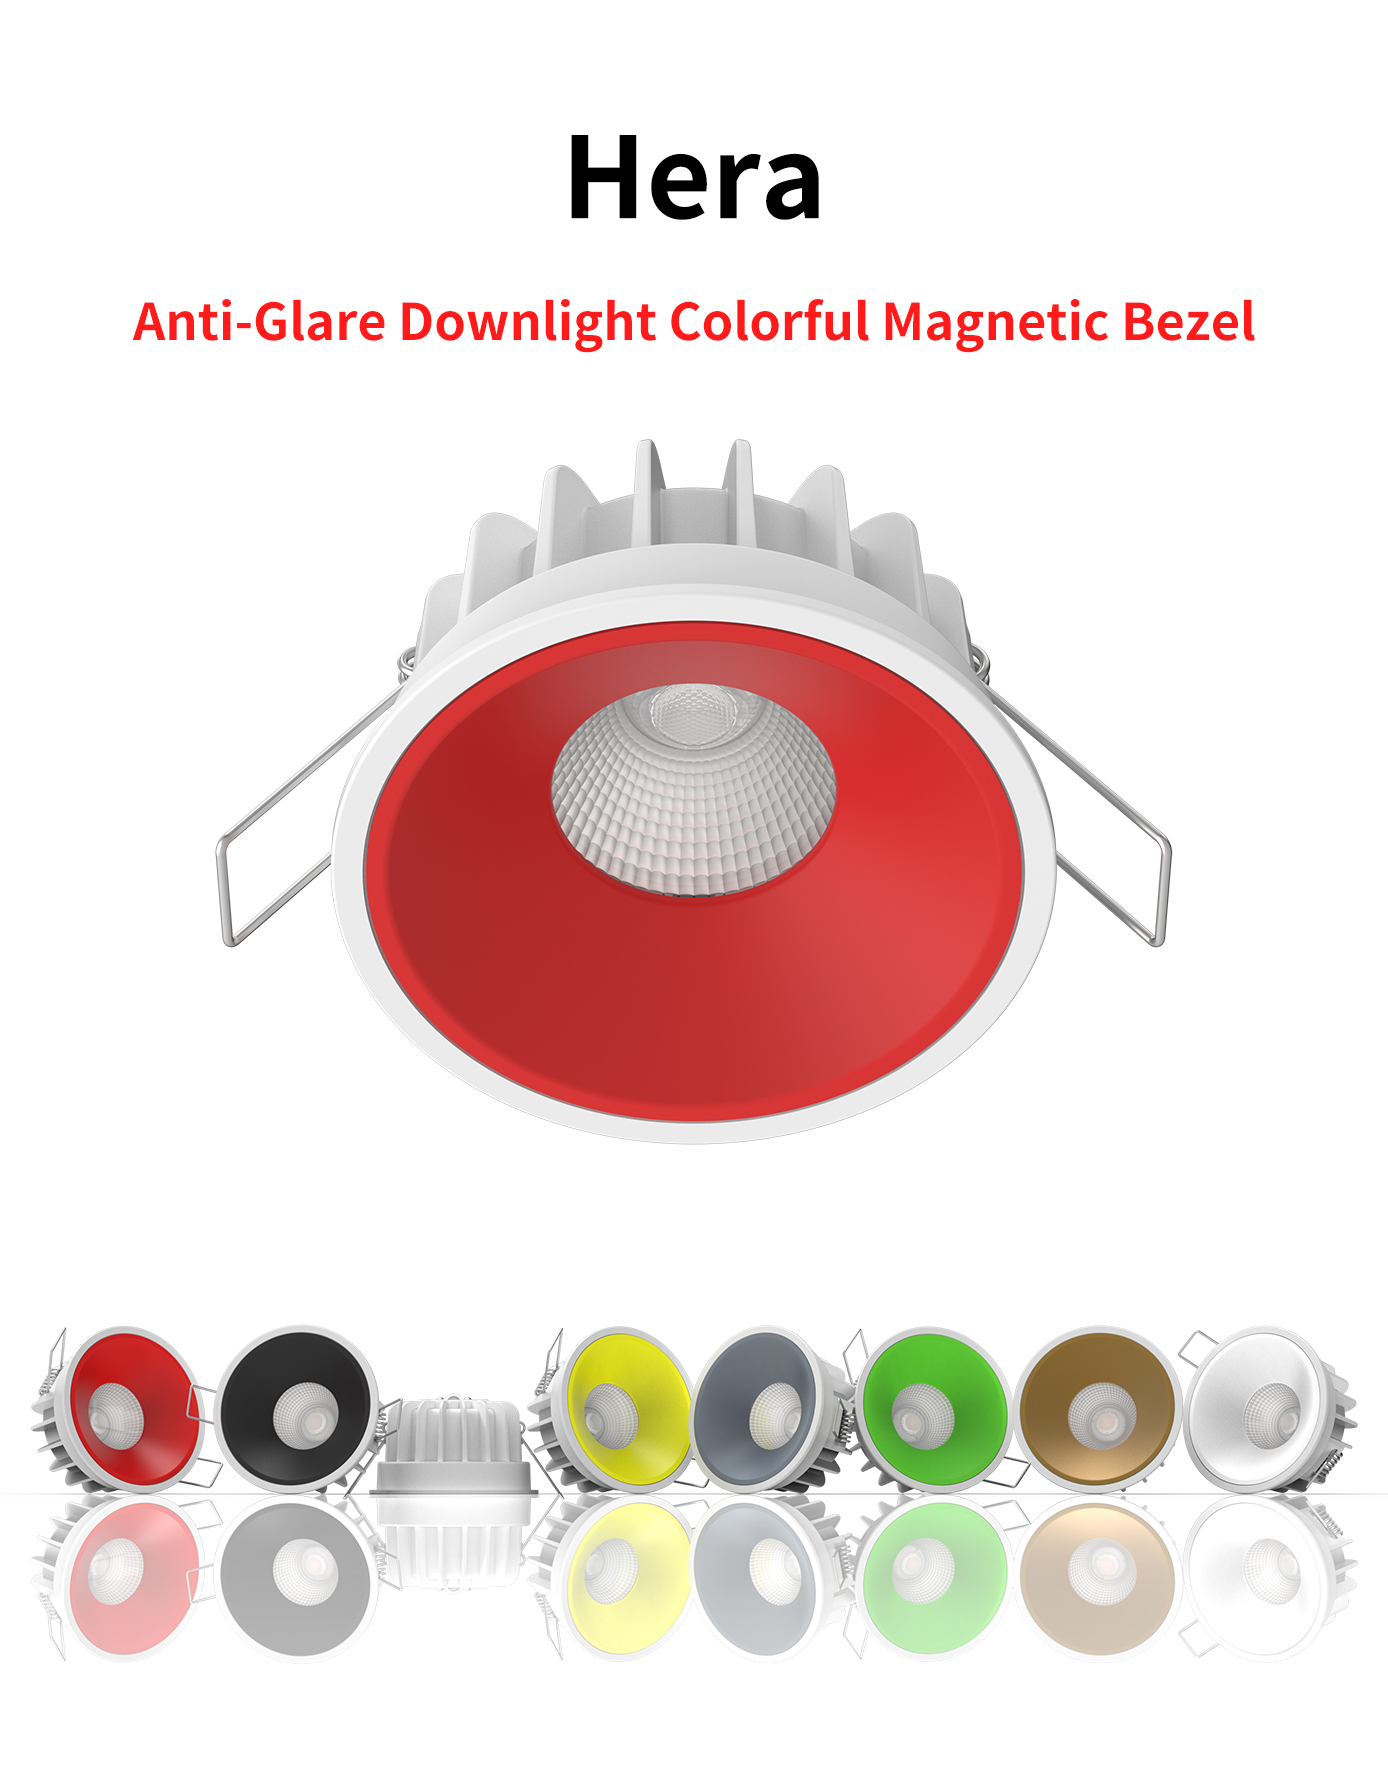 I-Hera 8W Anti-Glare LED Downlight ene-Colourful Magnetic Bezel